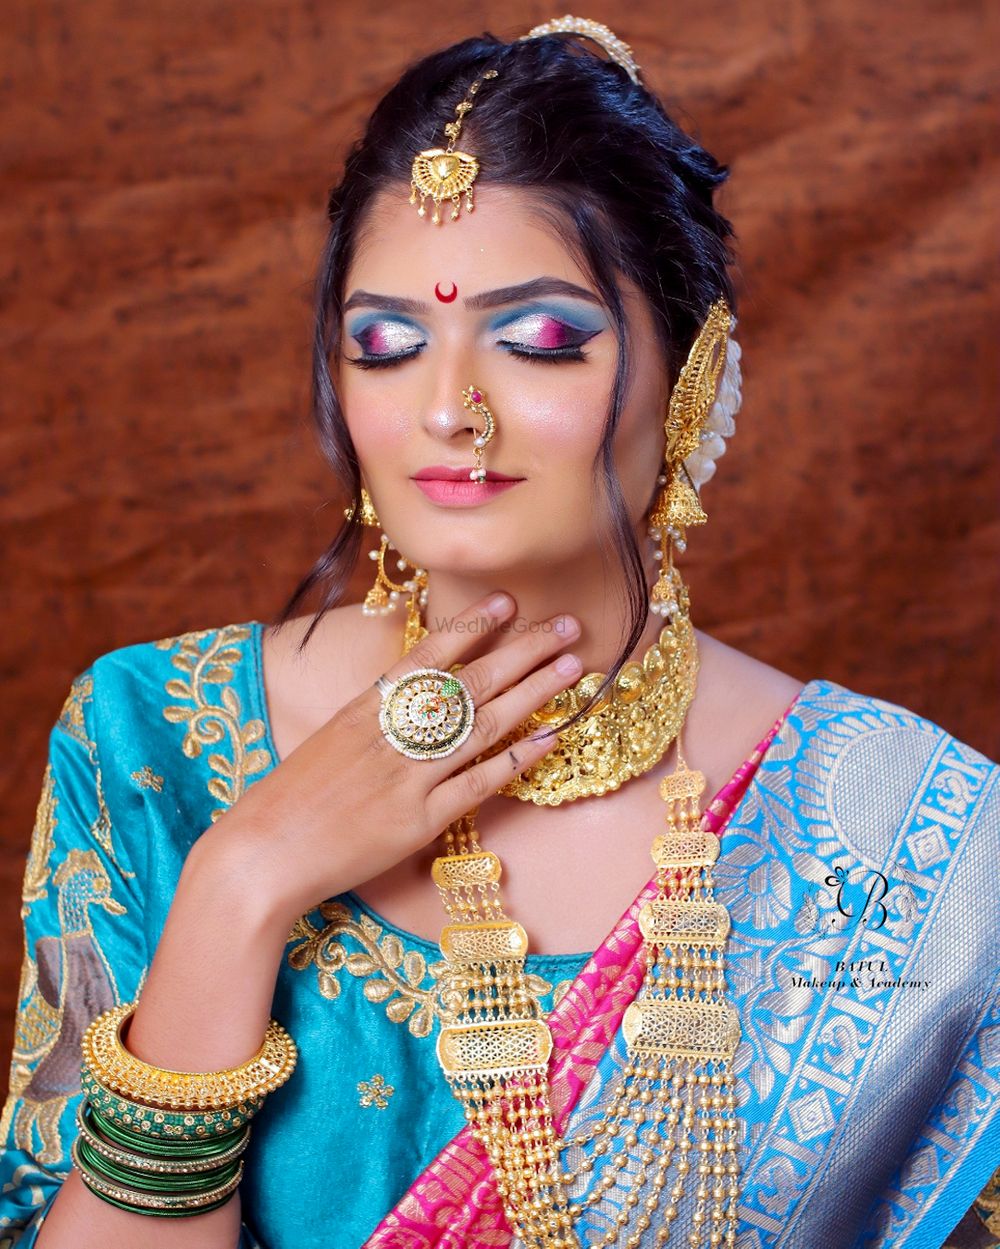 Photo From Maharashtrian Bride - By Batul Makeup Academy